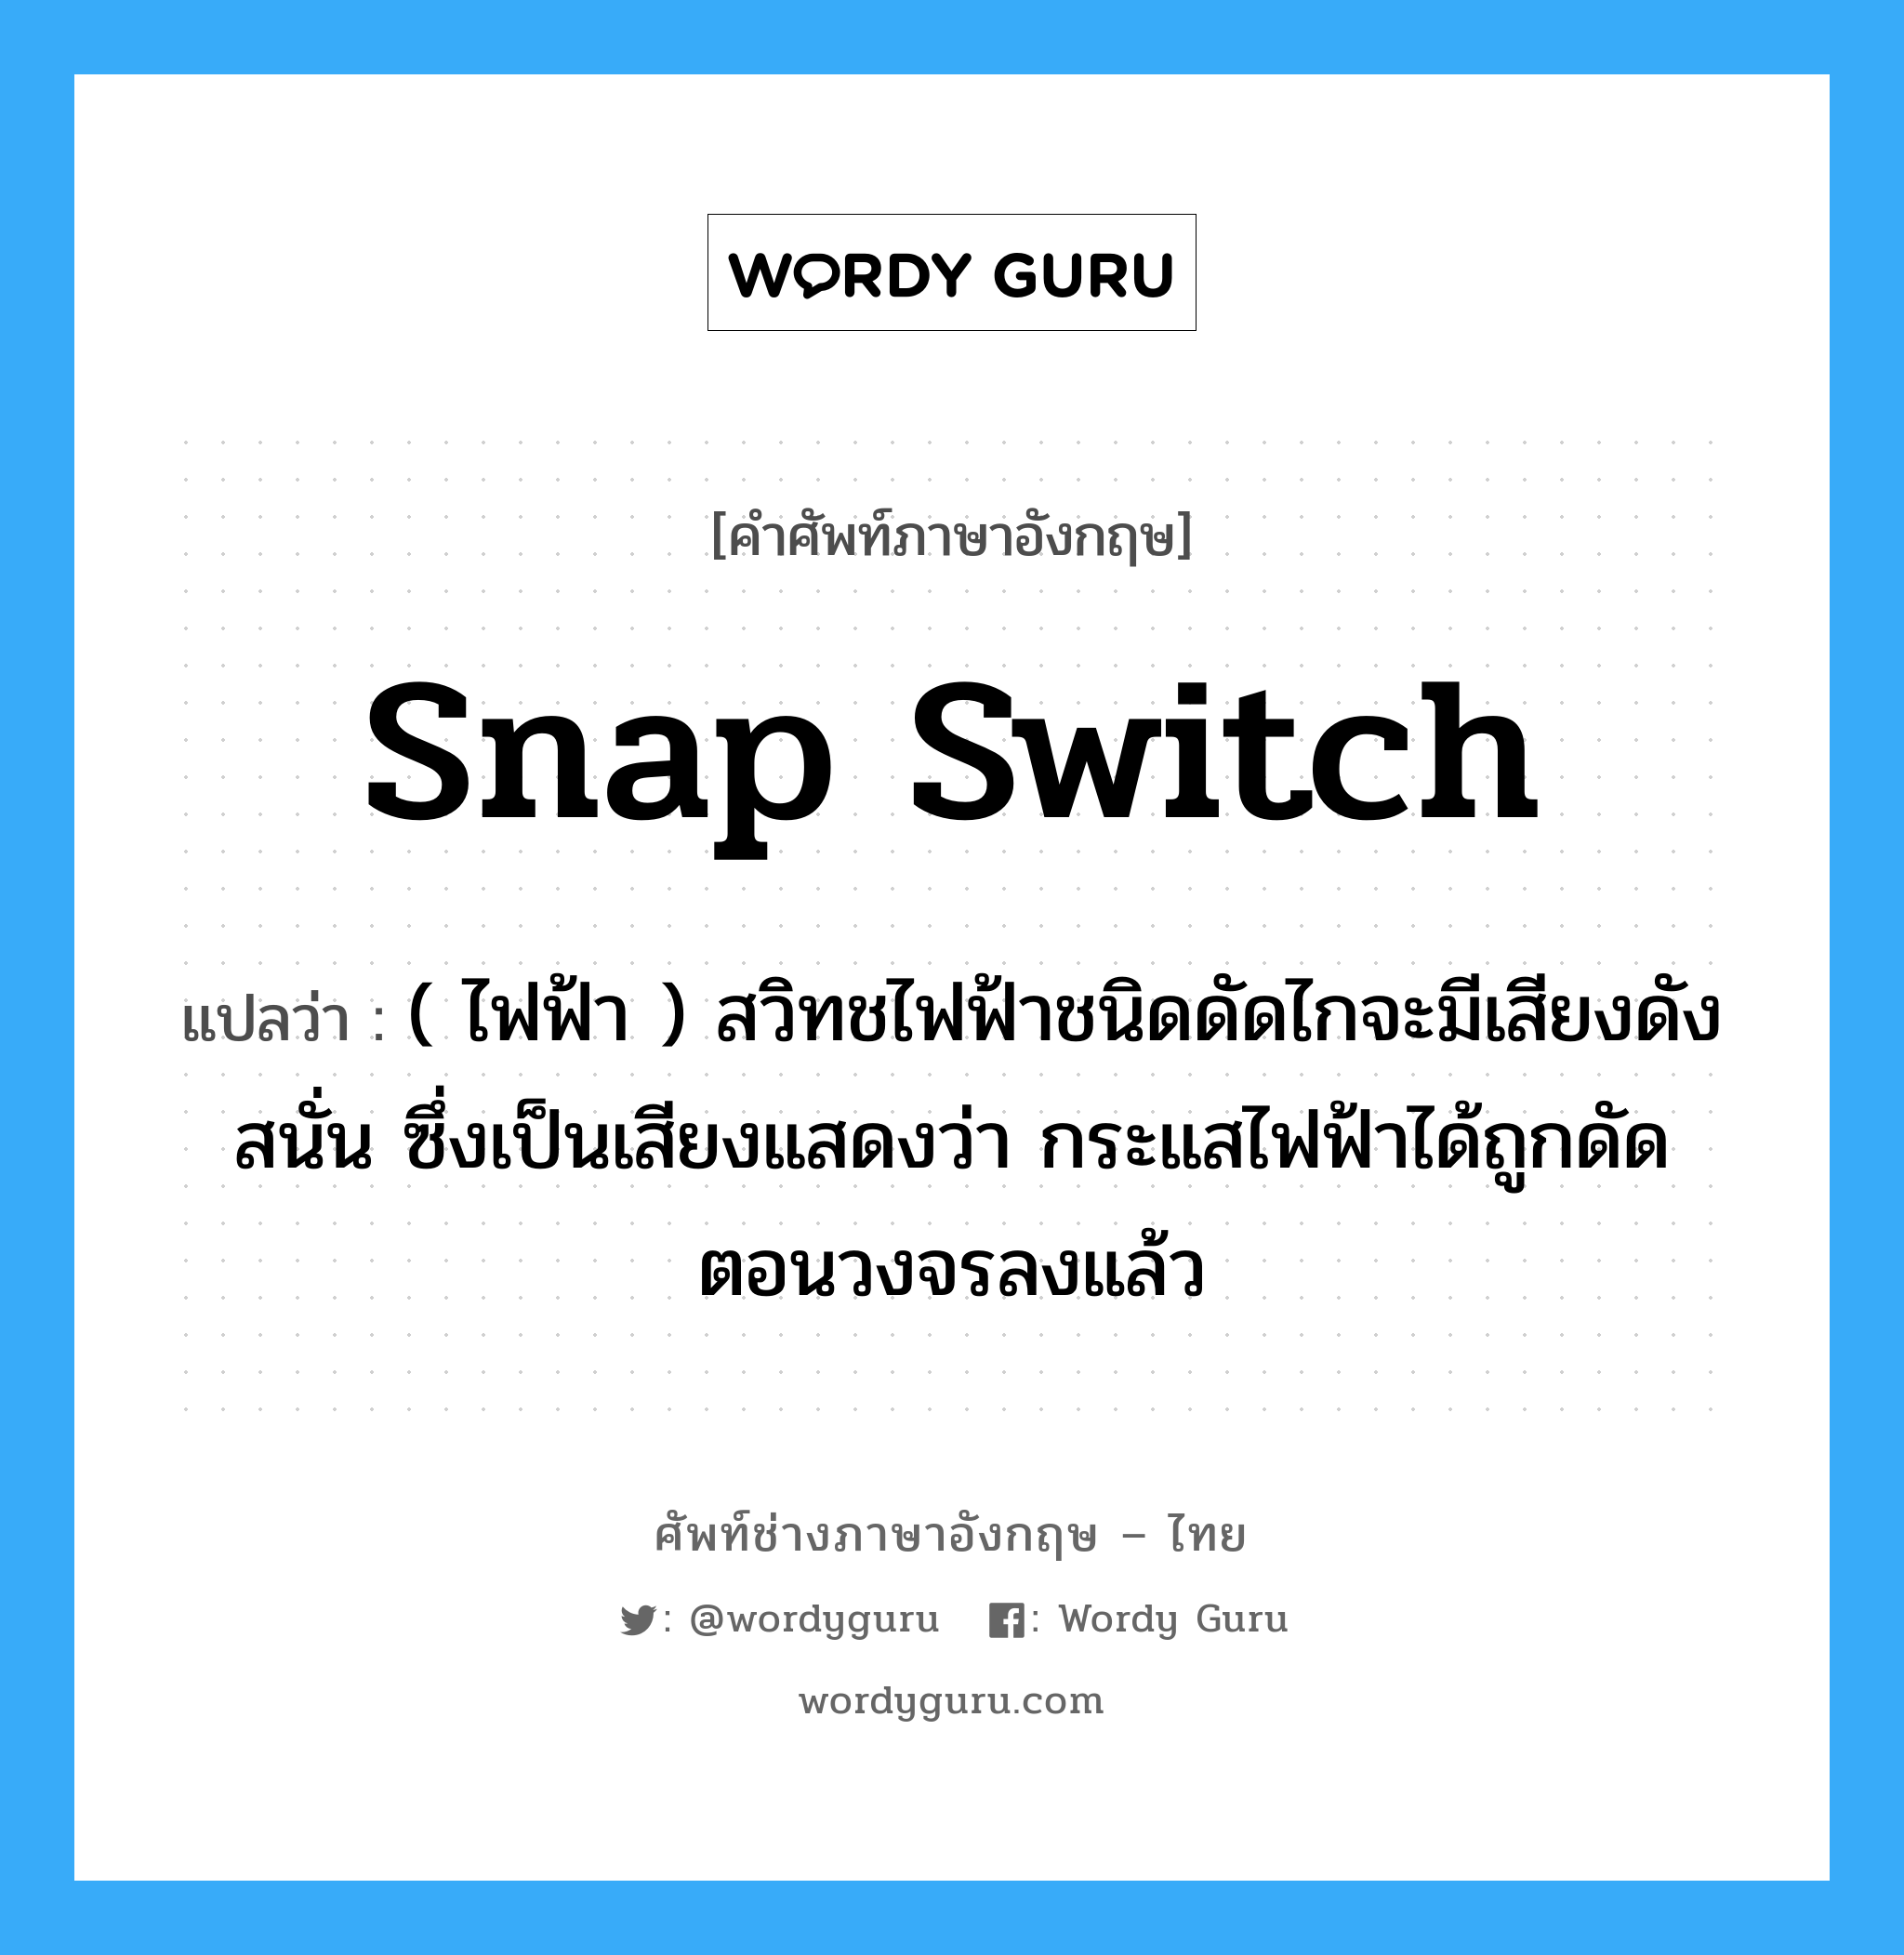 snap switch แปลว่า?, คำศัพท์ช่างภาษาอังกฤษ - ไทย snap switch คำศัพท์ภาษาอังกฤษ snap switch แปลว่า ( ไฟฟ้า ) สวิทชไฟฟ้าชนิดดัดไกจะมีเสียงดังสนั่น ซึ่งเป็นเสียงแสดงว่า กระแสไฟฟ้าได้ถูกดัดตอนวงจรลงแล้ว